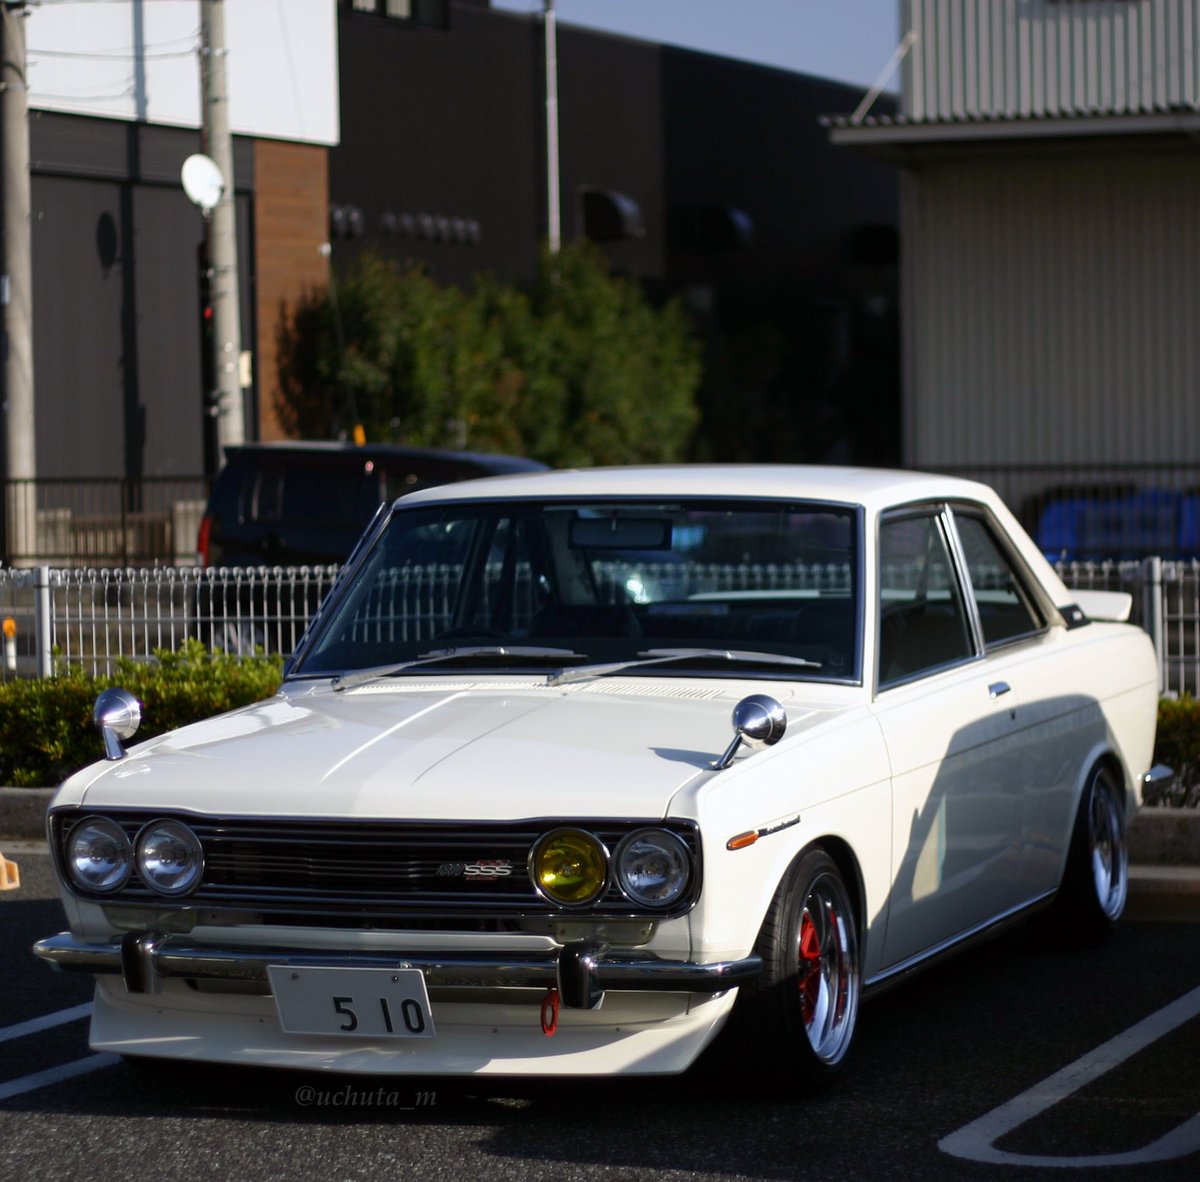 12月に北本のイベントの場外駐車場にいた510。渋かった〜☺️

#Datsun #Datsun510 #Bluebird #olschool #旧車